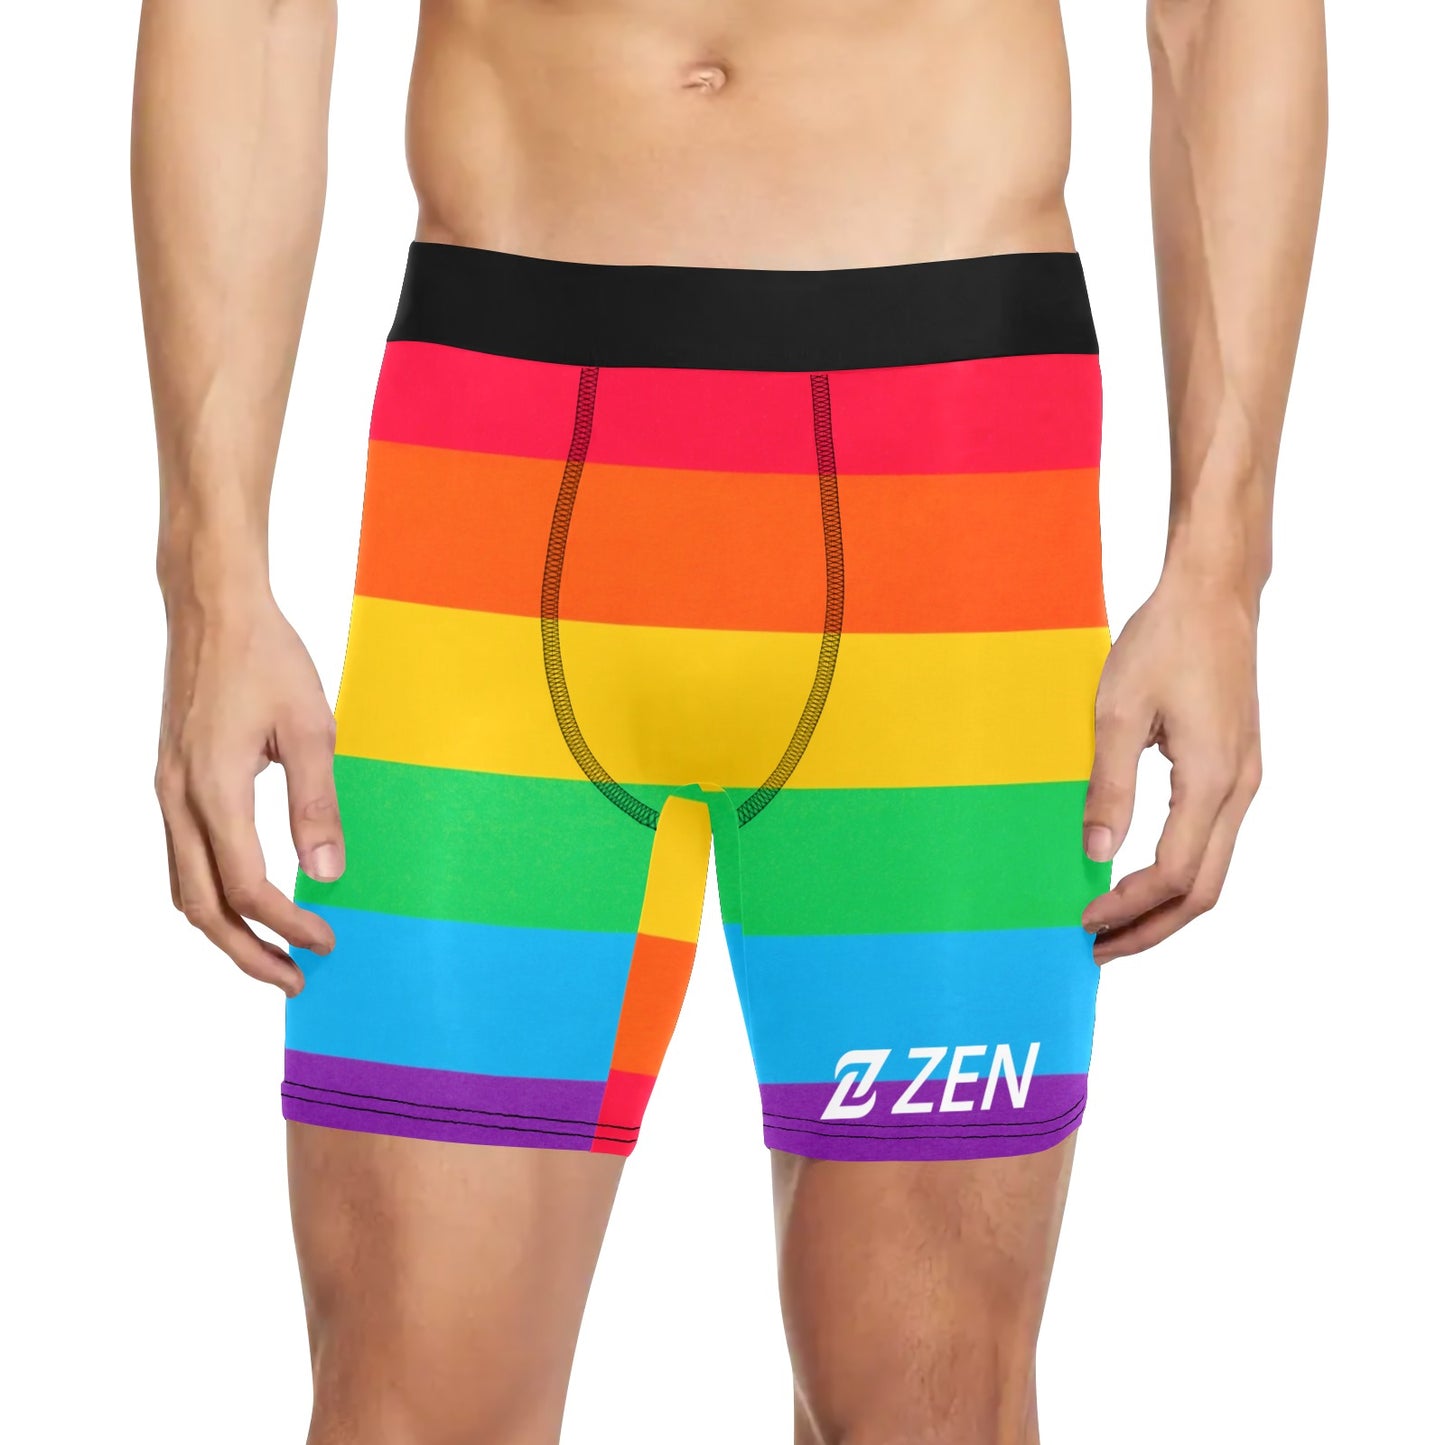 Zen Boxers Long - Rainbow